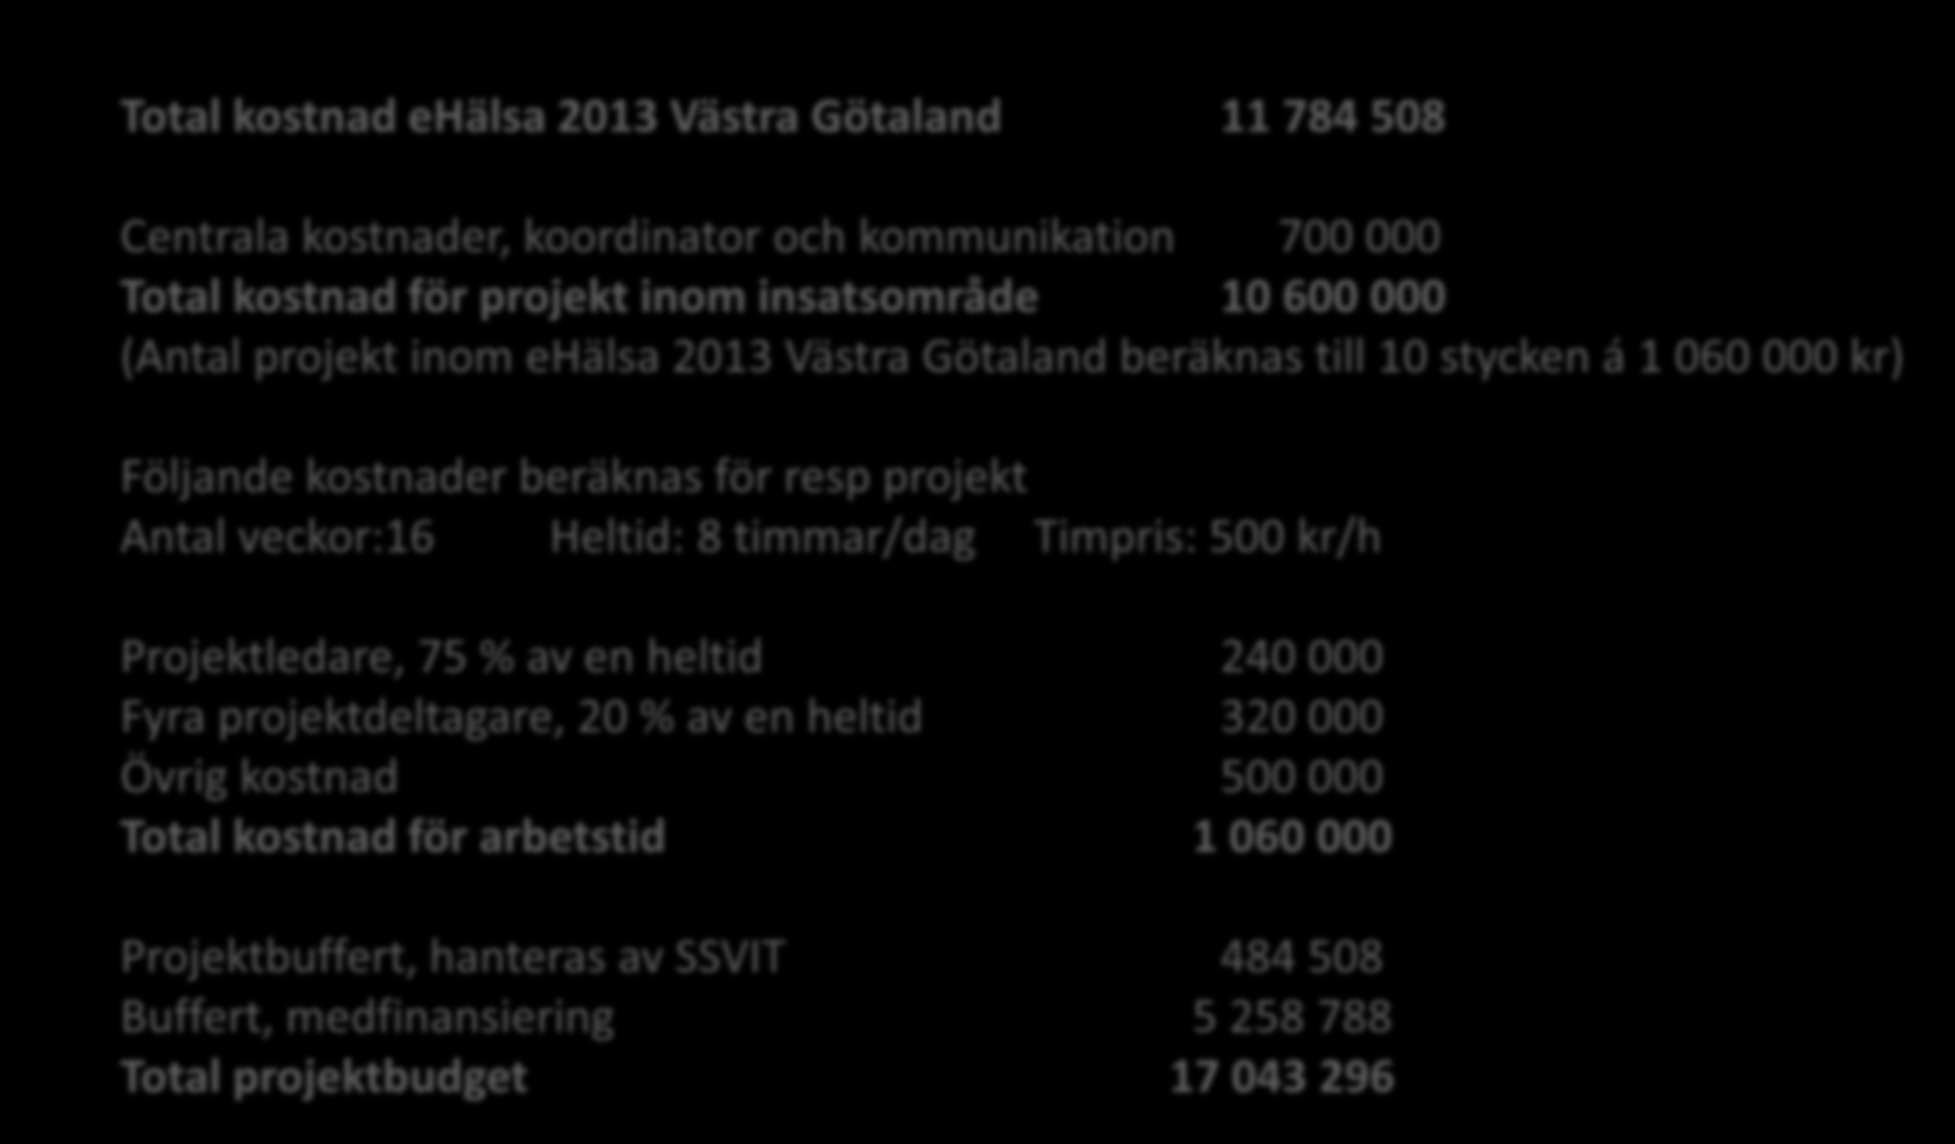 Budget att fördela Total kostnad ehälsa 2013 Västra Götaland 11 784 508 Centrala kostnader, koordinator och kommunikation 700 000 Total kostnad för projekt inom insatsområde 10 600 000 (Antal projekt